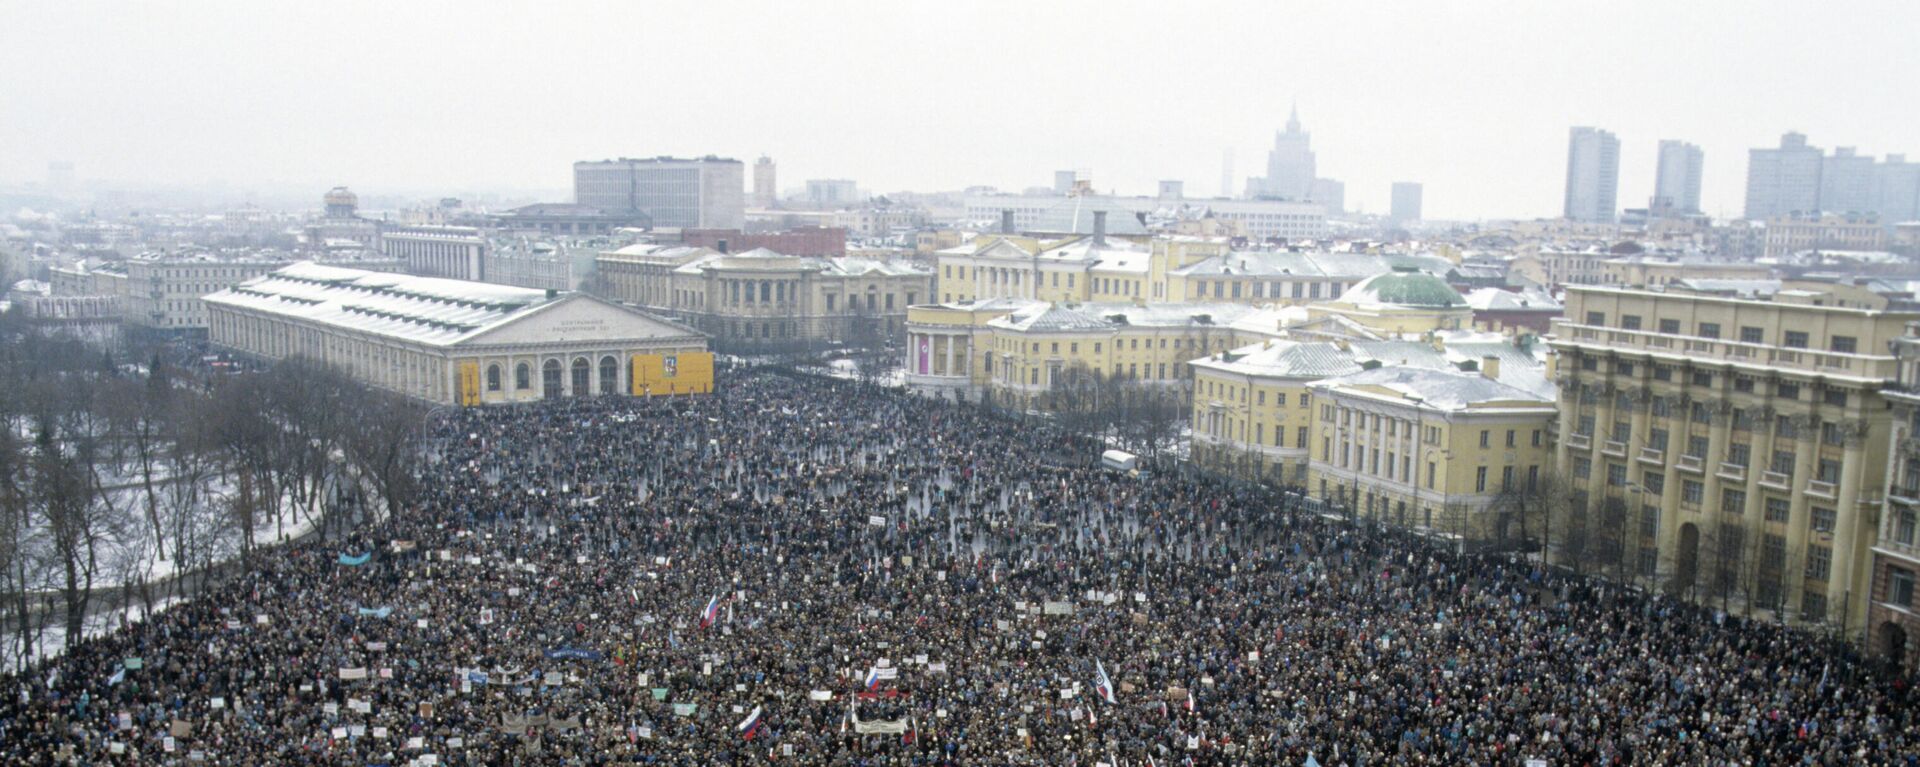 Архивска фотографија: Митинг на Мањежном тргу у Москви 13. јануара 1991. - Sputnik Србија, 1920, 05.09.2021